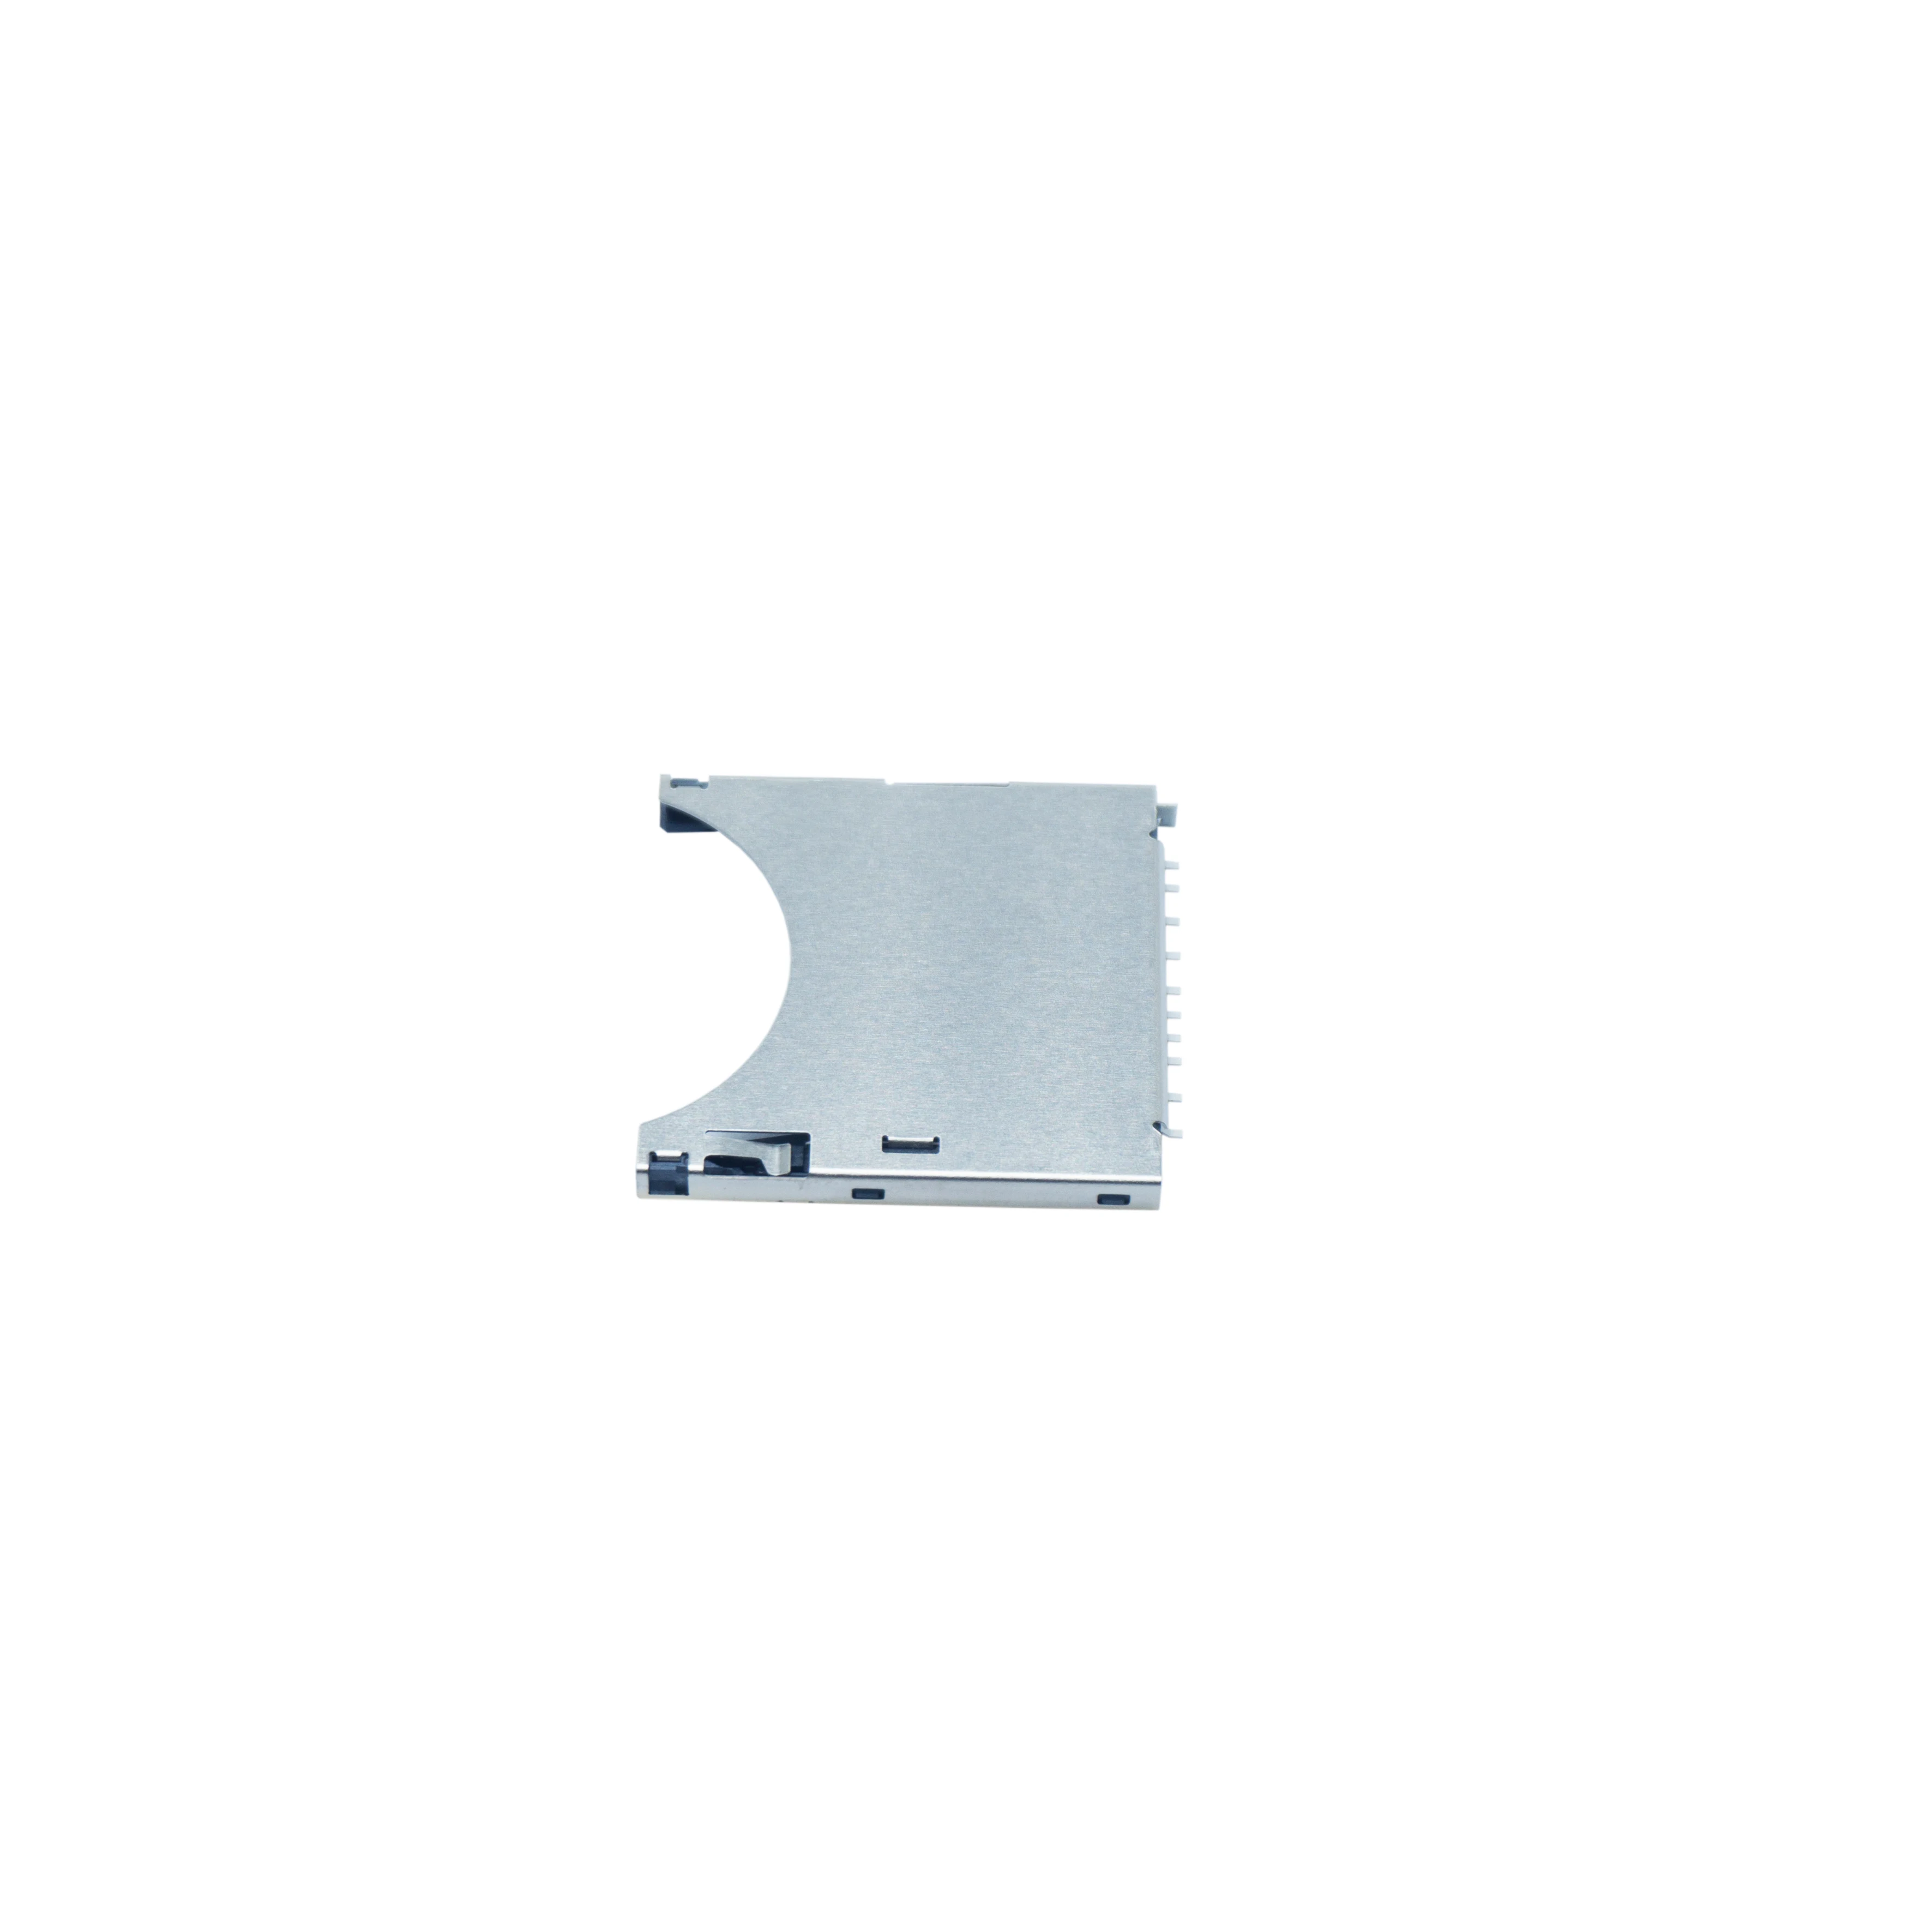 SD-карта имеет функцию блокировки карты и большой разъем для SD-карты 10P 2 75 H на печатной плате